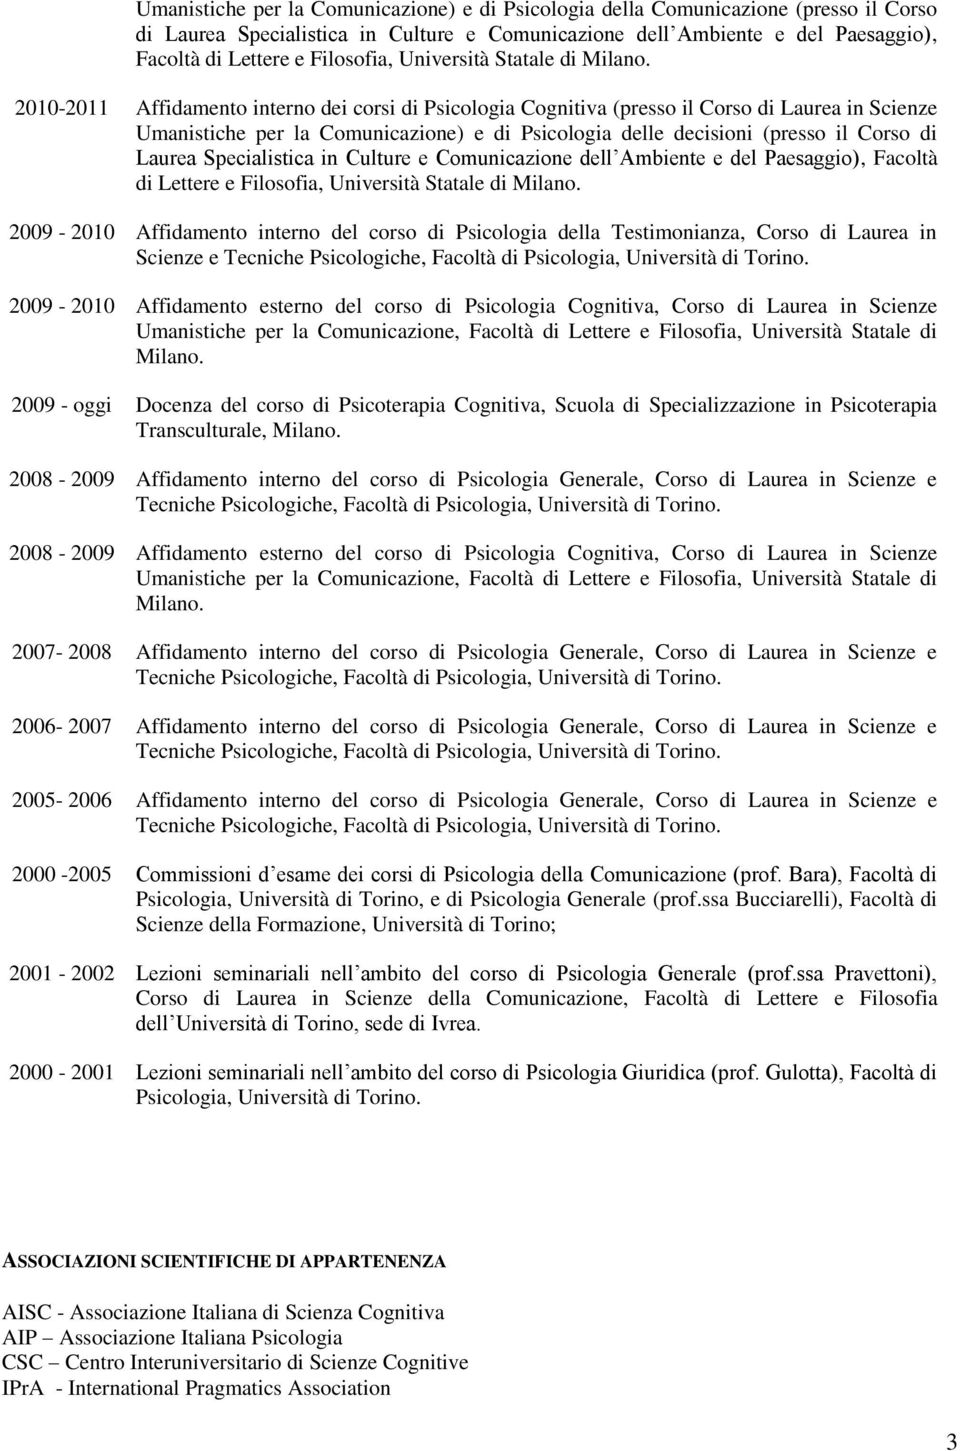 2010-2011 Affidamento interno dei corsi di Psicologia Cognitiva (presso il Corso di Laurea in Scienze Umanistiche per la Comunicazione) e di Psicologia delle decisioni (presso il Corso di Laurea